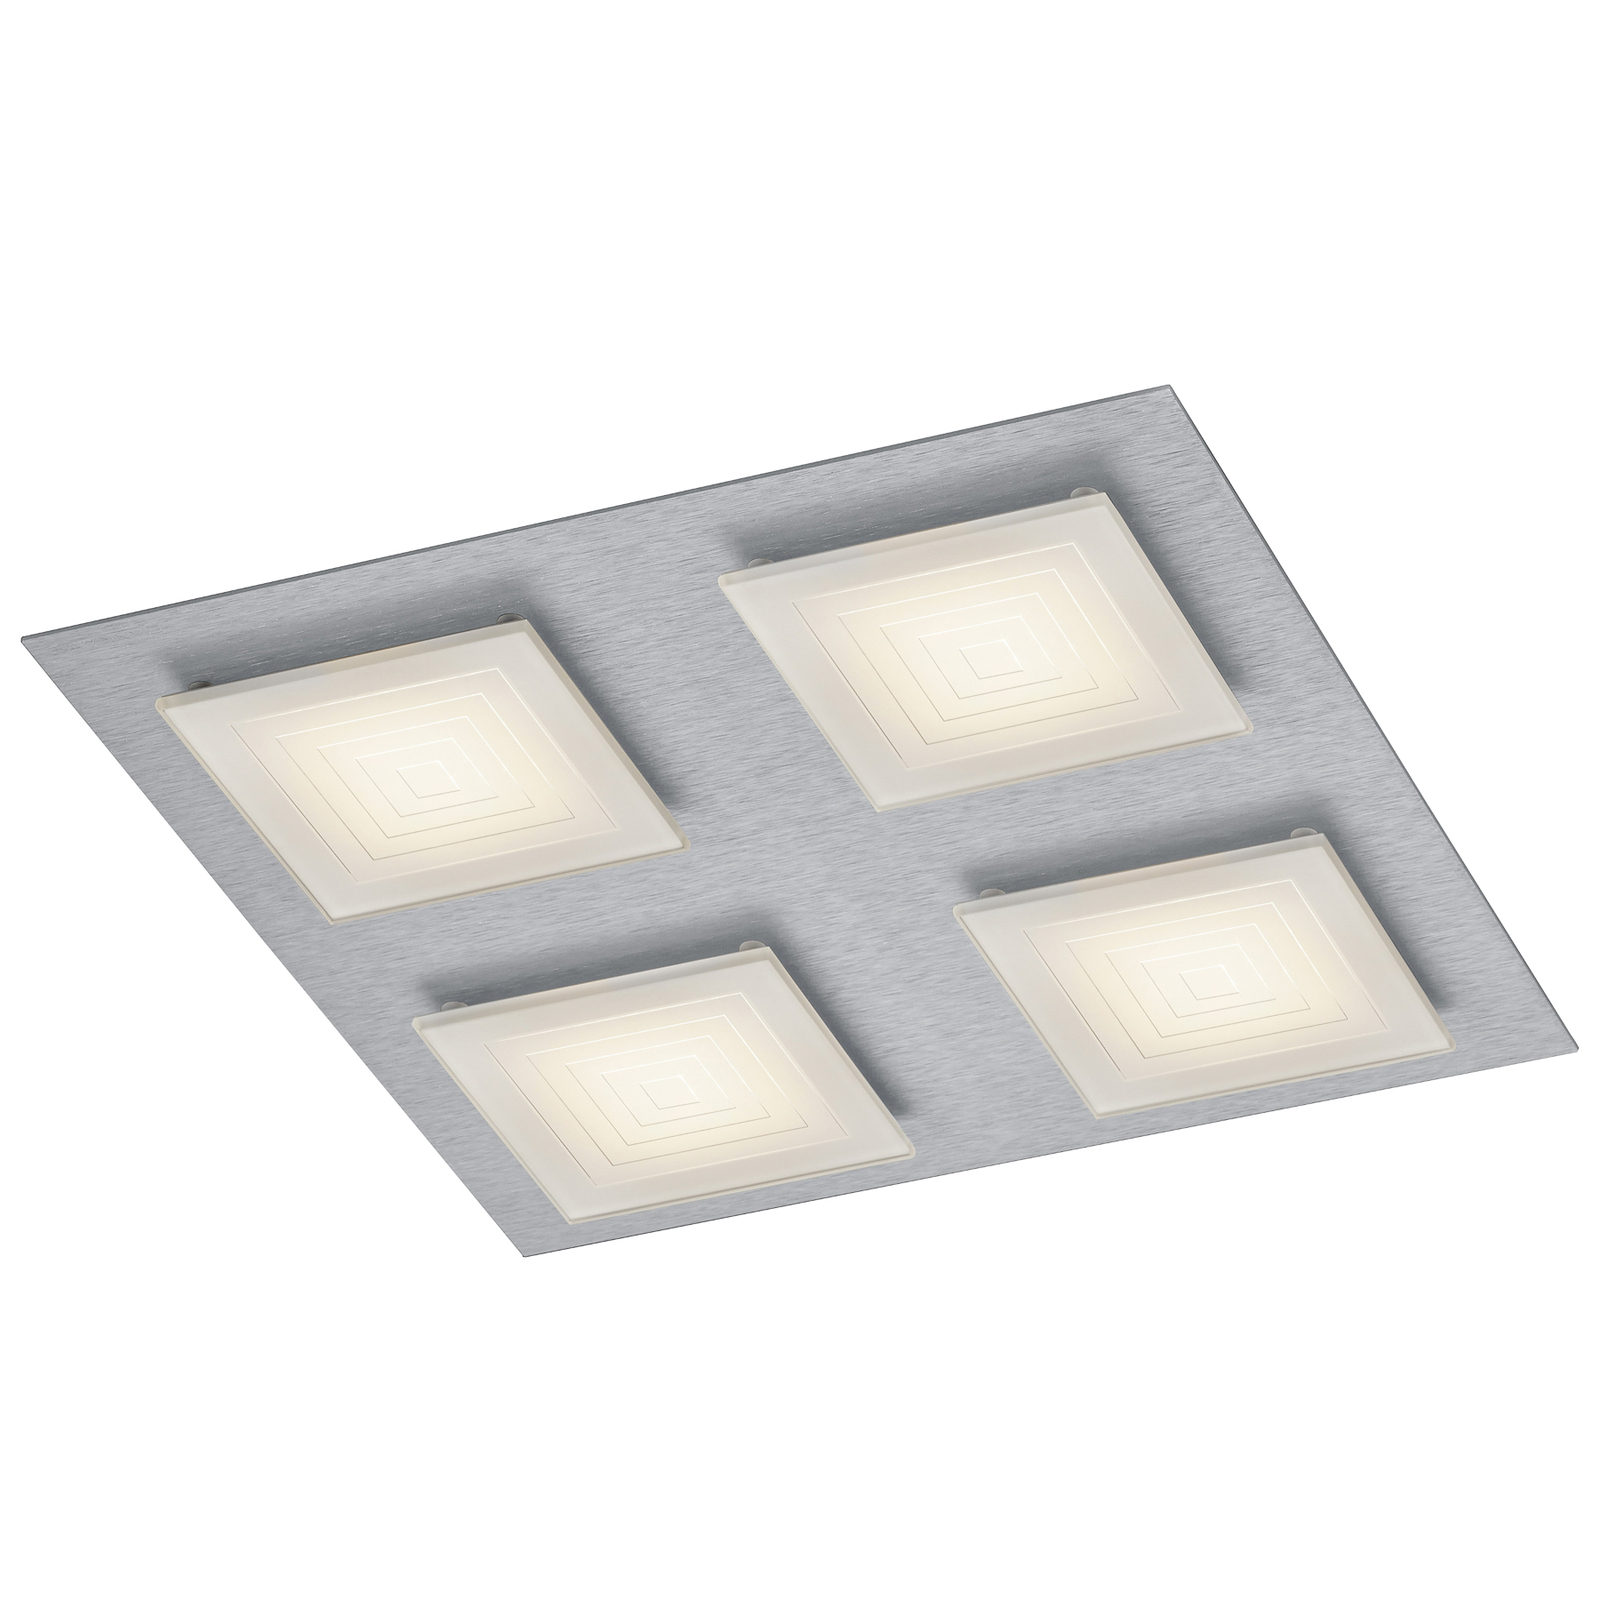 BANKAMP Ino LED ceiling light 4-bulb silver